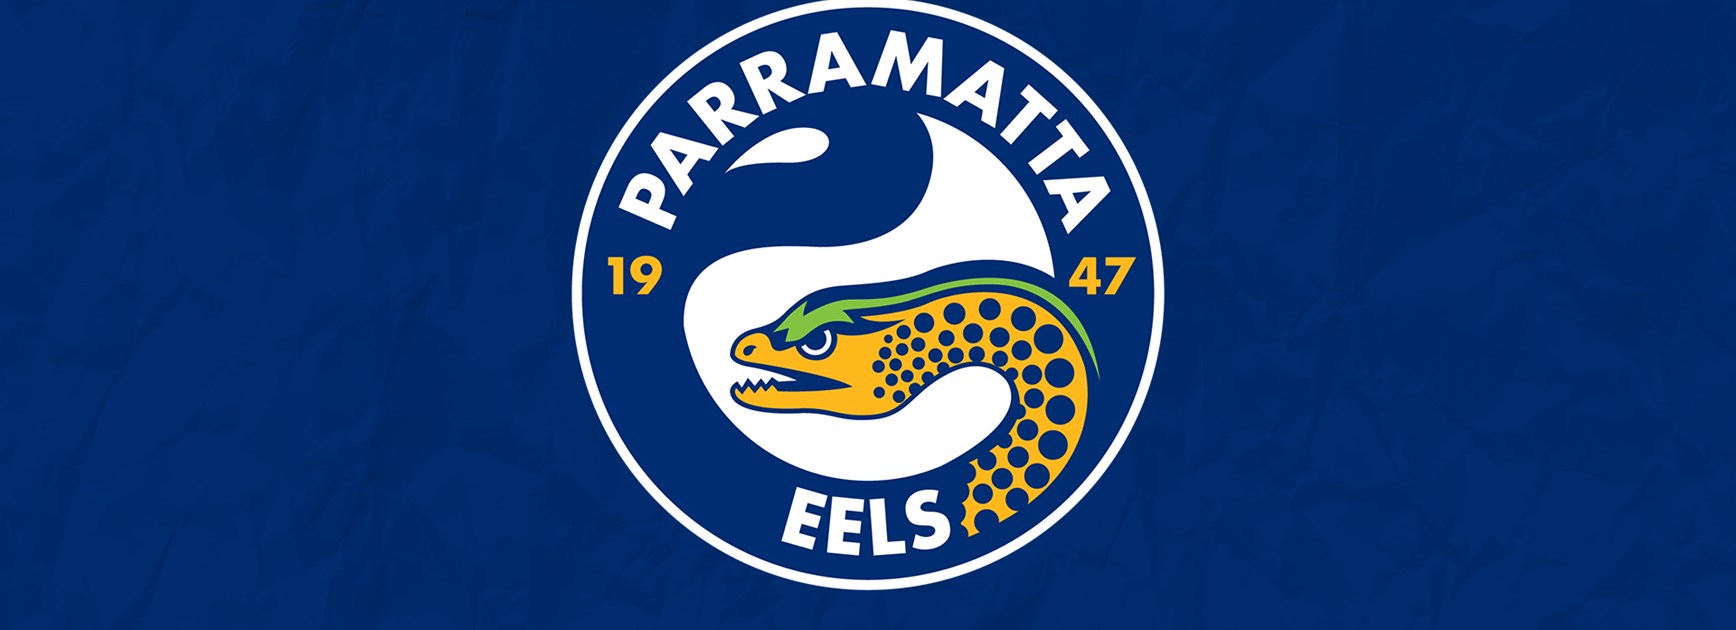 Eels Digital & Video Internship available